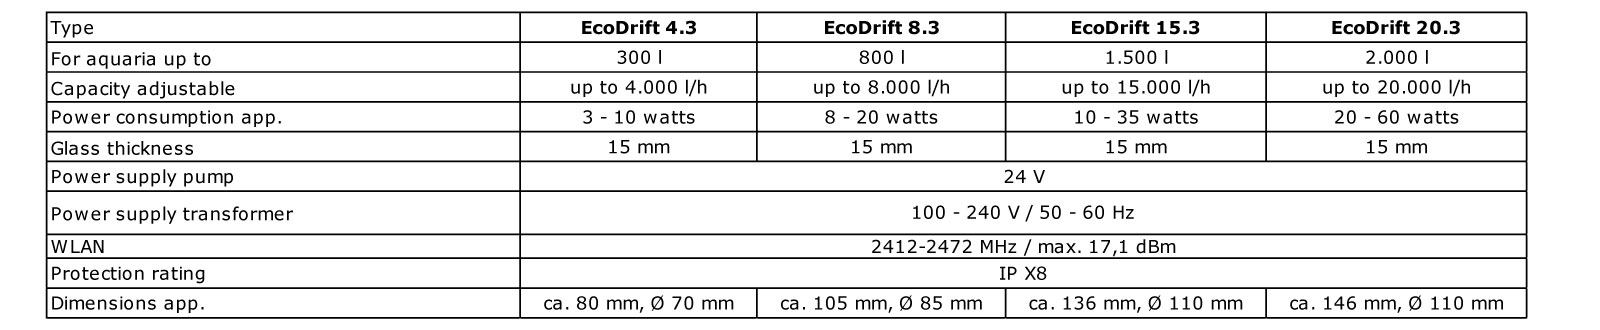 Aqua Medic Controller EcoDrift 4.3 26